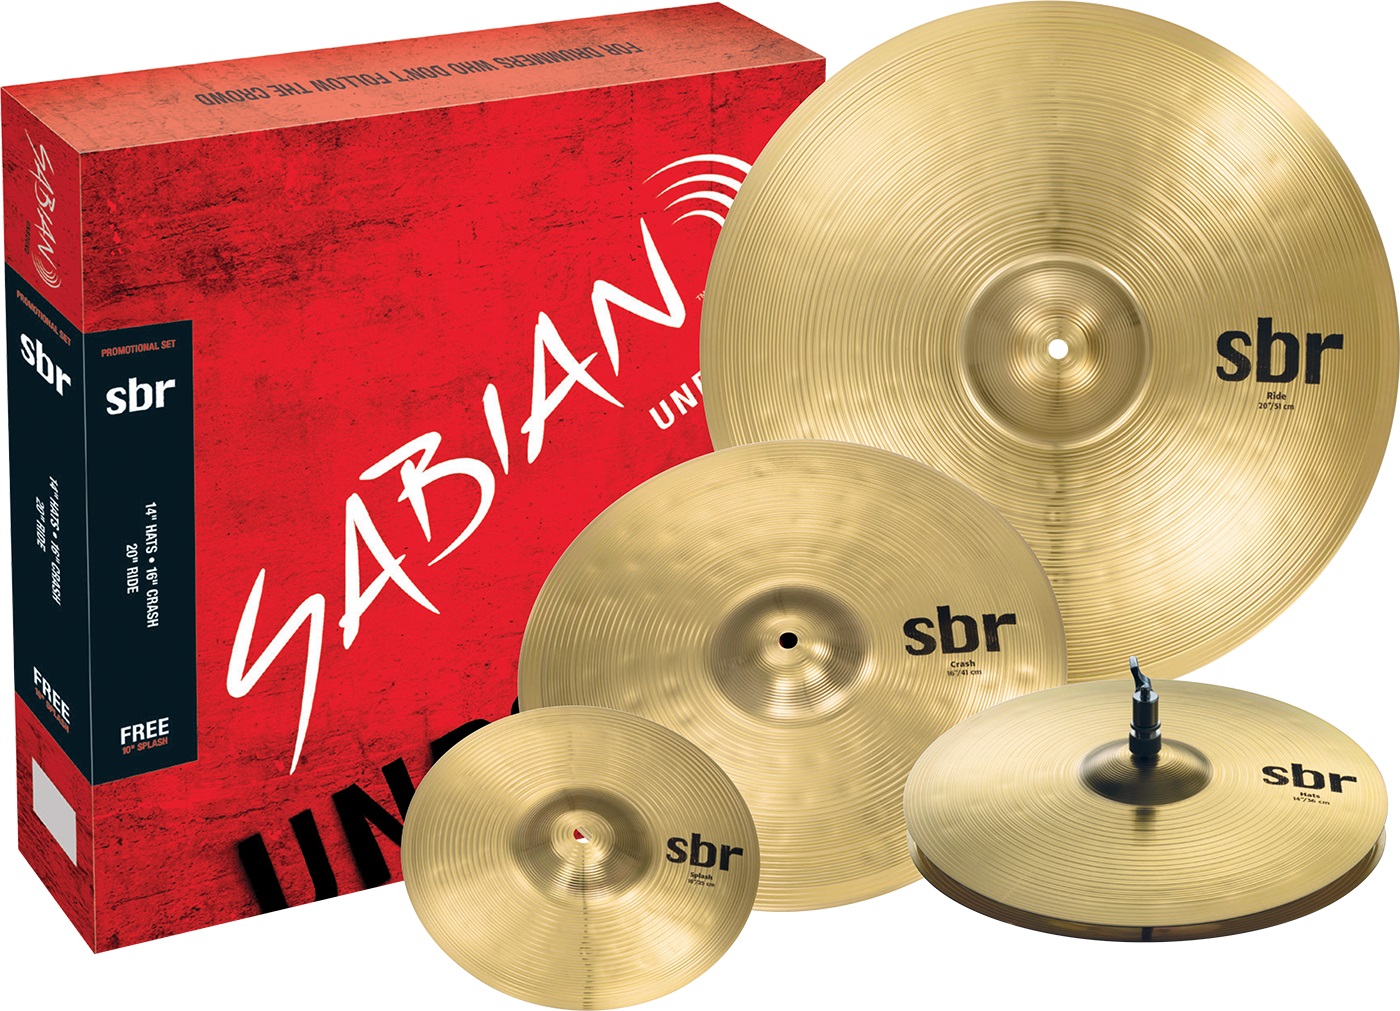 Тарелки, барабаны для ударных установок Sabian SBr Promotional Pack тарелки барабаны для ударных установок sabian 14 b8x rock hats